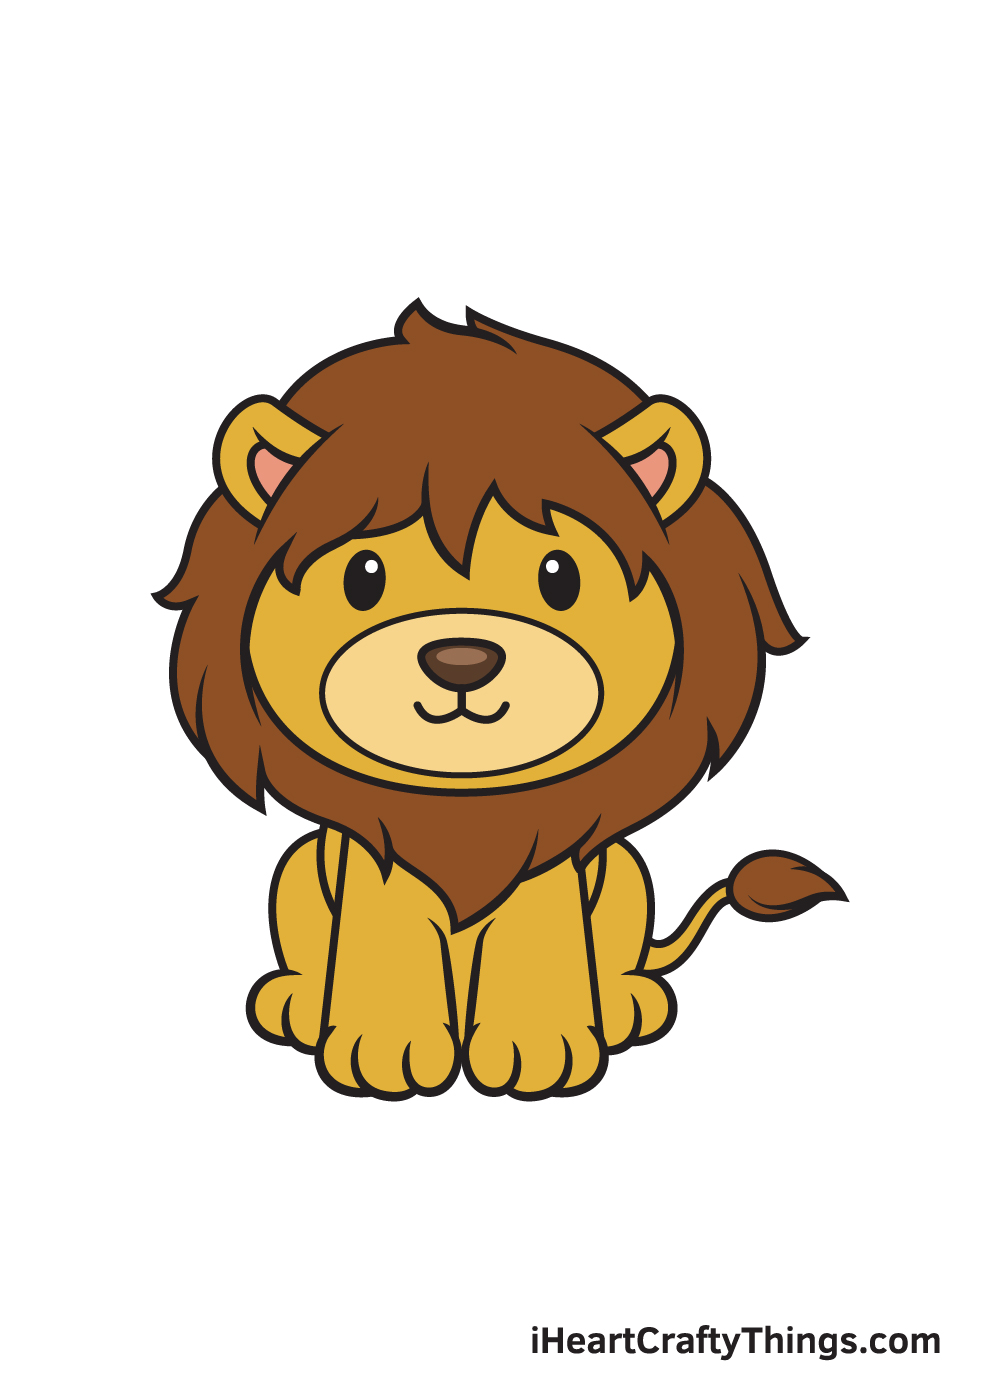 Original Lion Drawing | eBay-saigonsouth.com.vn